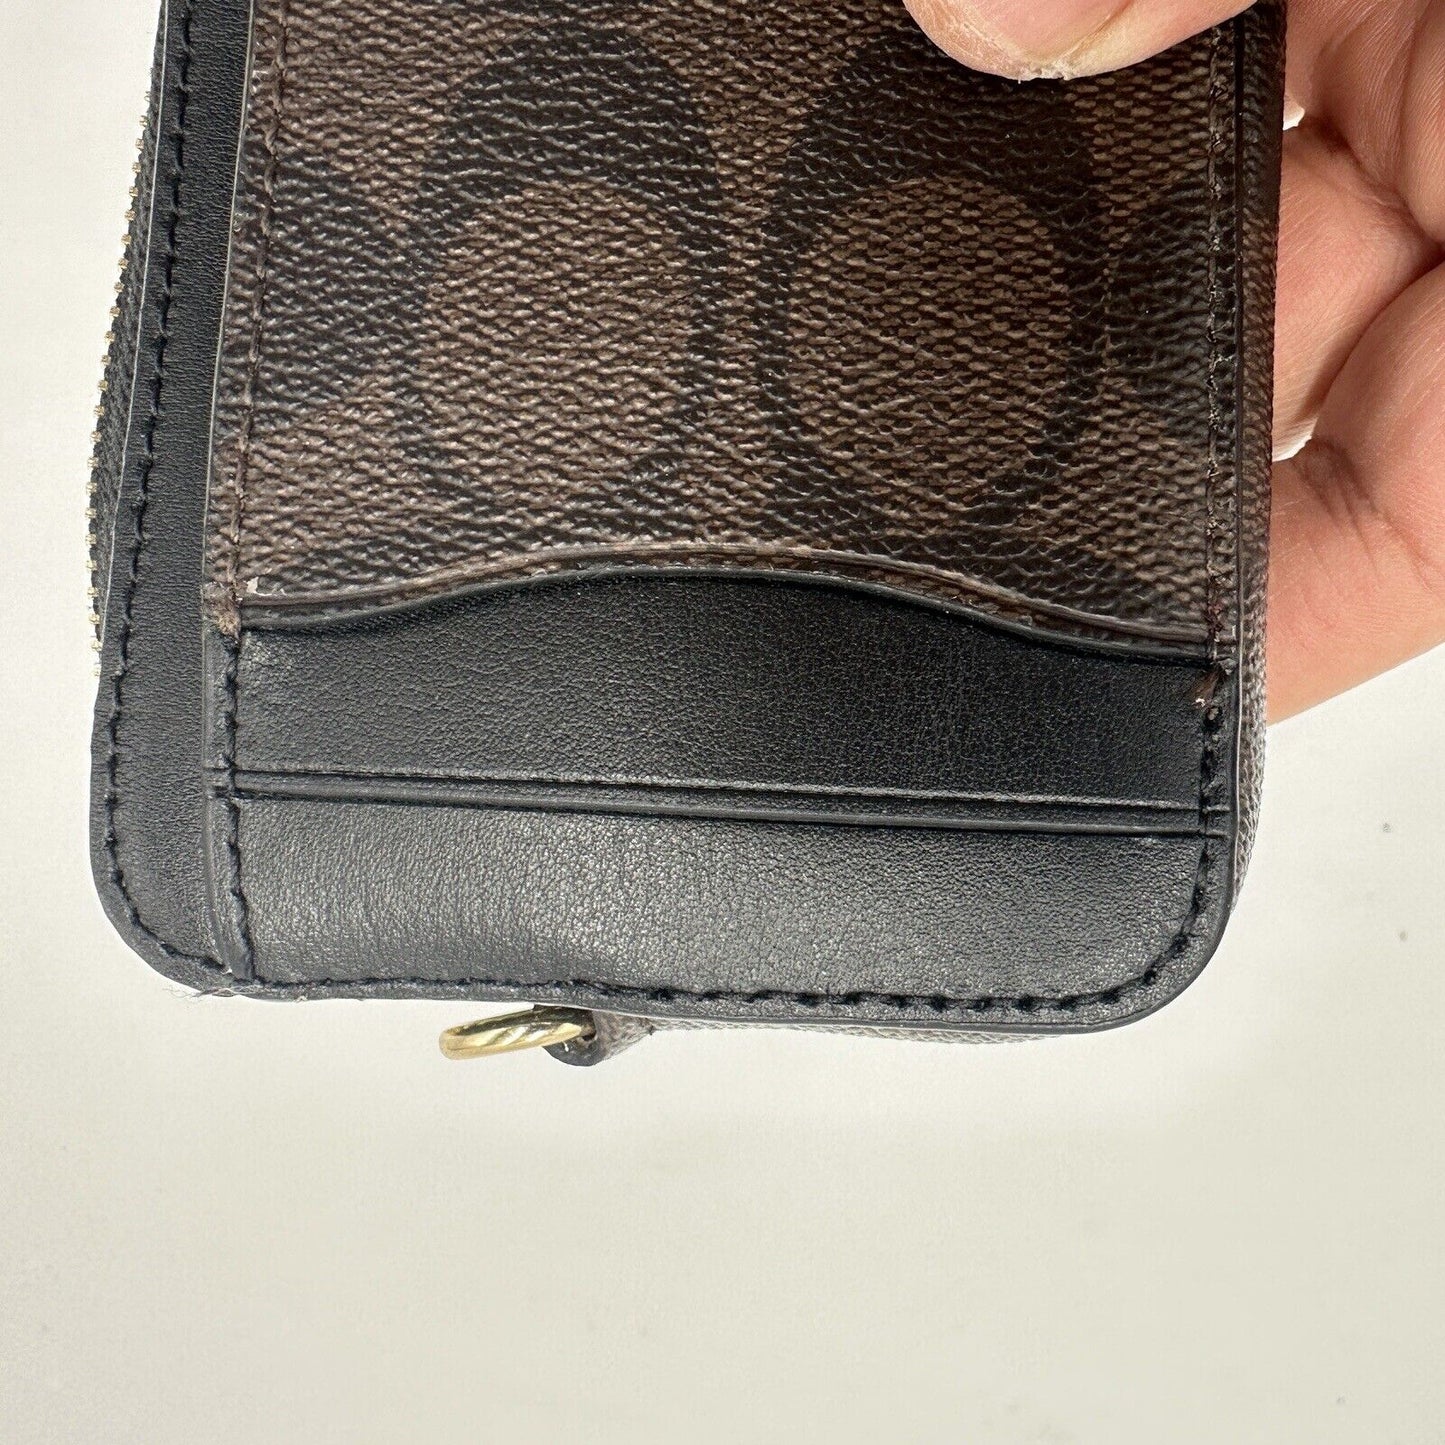 Coach Signature Women's Purse Zip Card Case C0058 Brown Black Wallet Leather